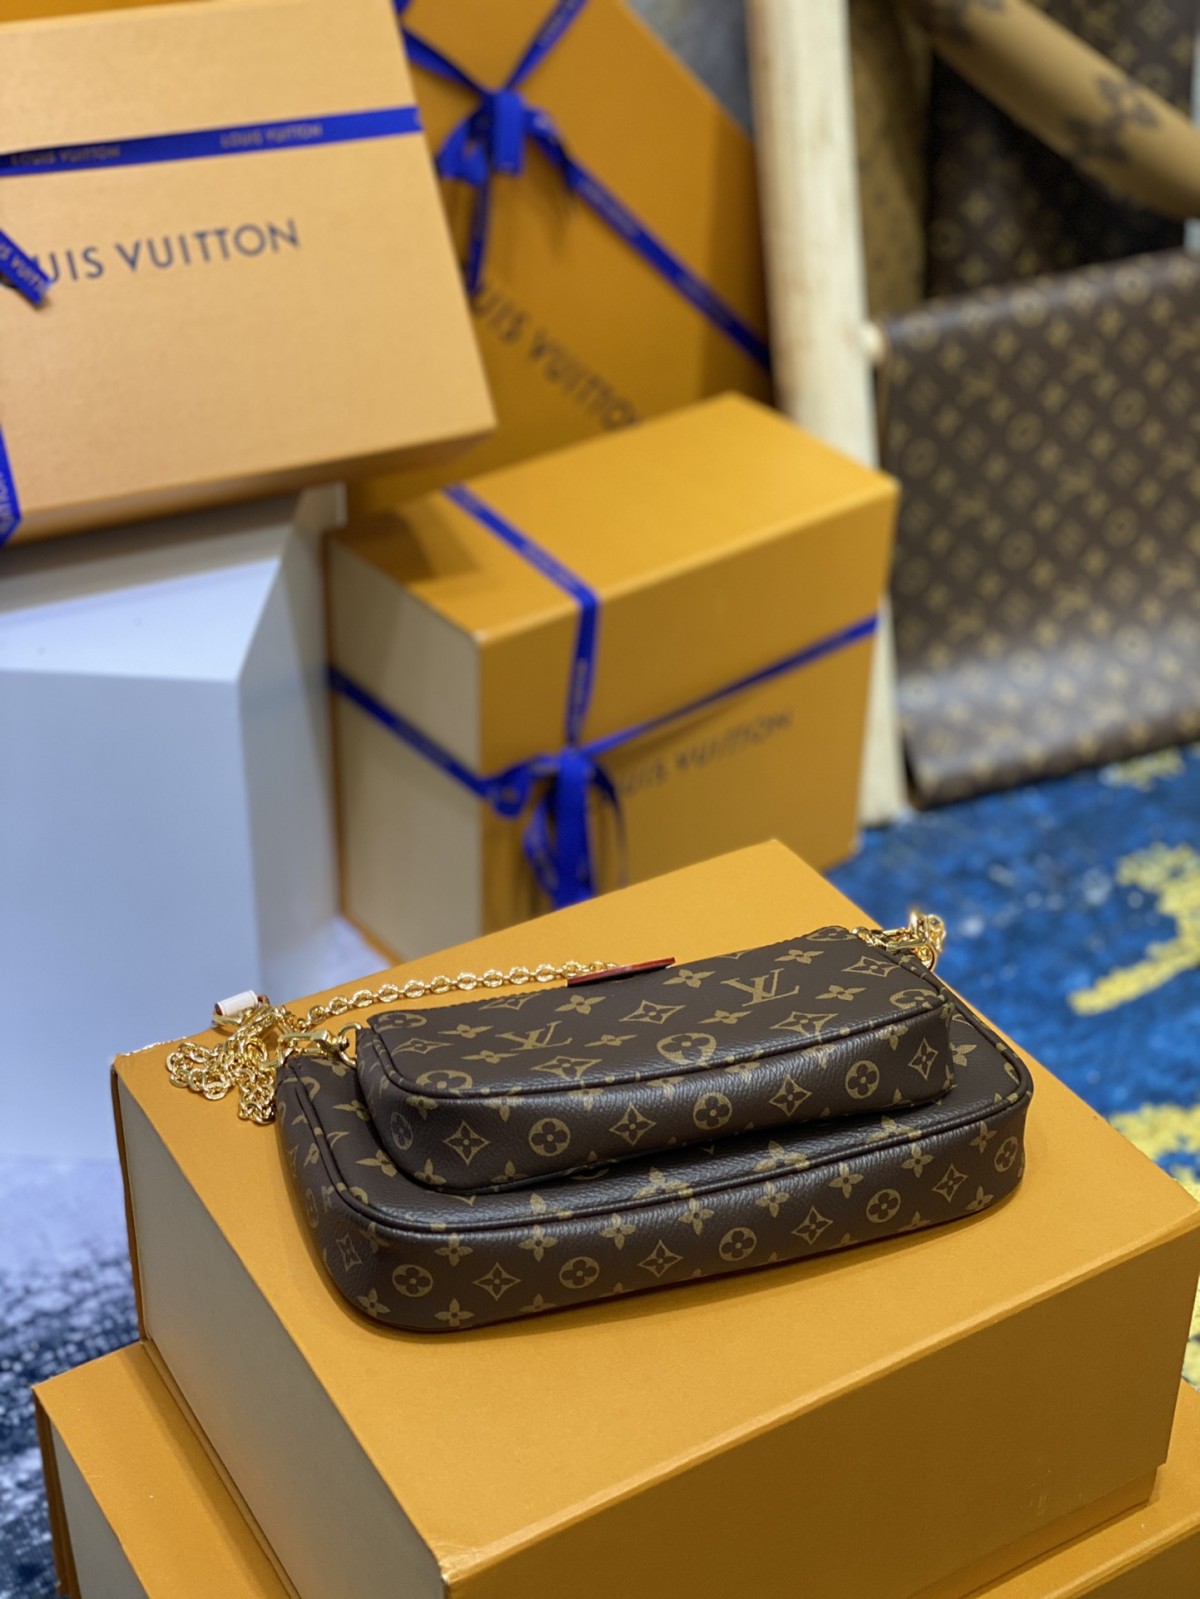 Kā es varu tiešsaistē iegādāties Louis Vuitton somas siksnas kopiju? (2022. gada jaunākais) - labākās kvalitātes viltotās Louis Vuitton somas tiešsaistes veikals, dizainera somas kopija ru